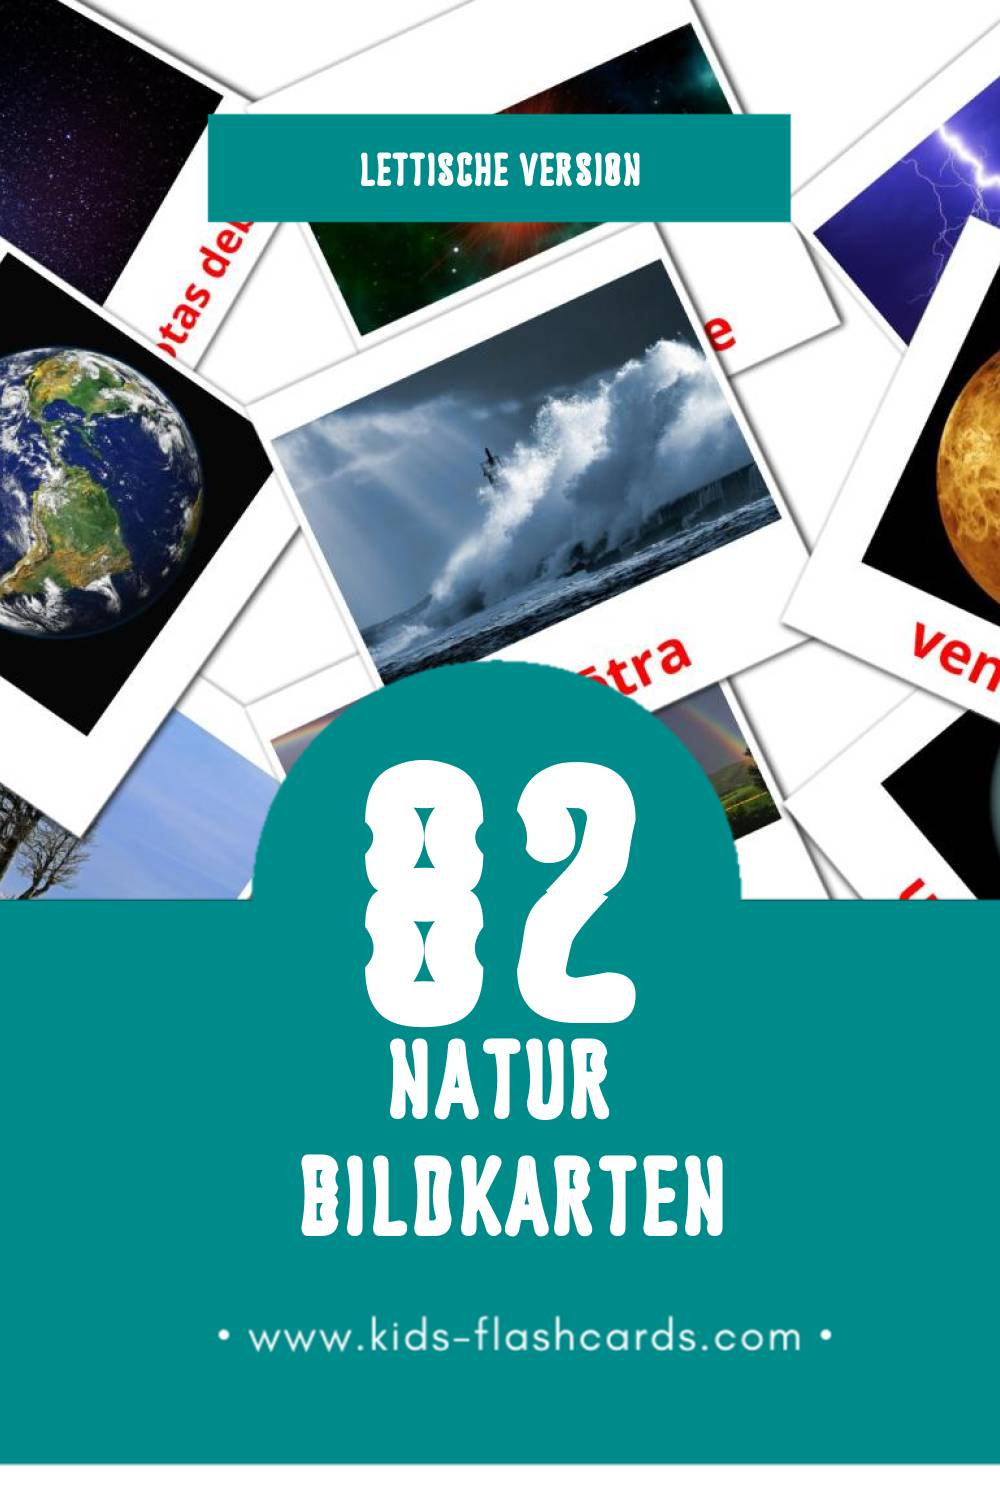 Visual Daba Flashcards für Kleinkinder (82 Karten in Lettisch)